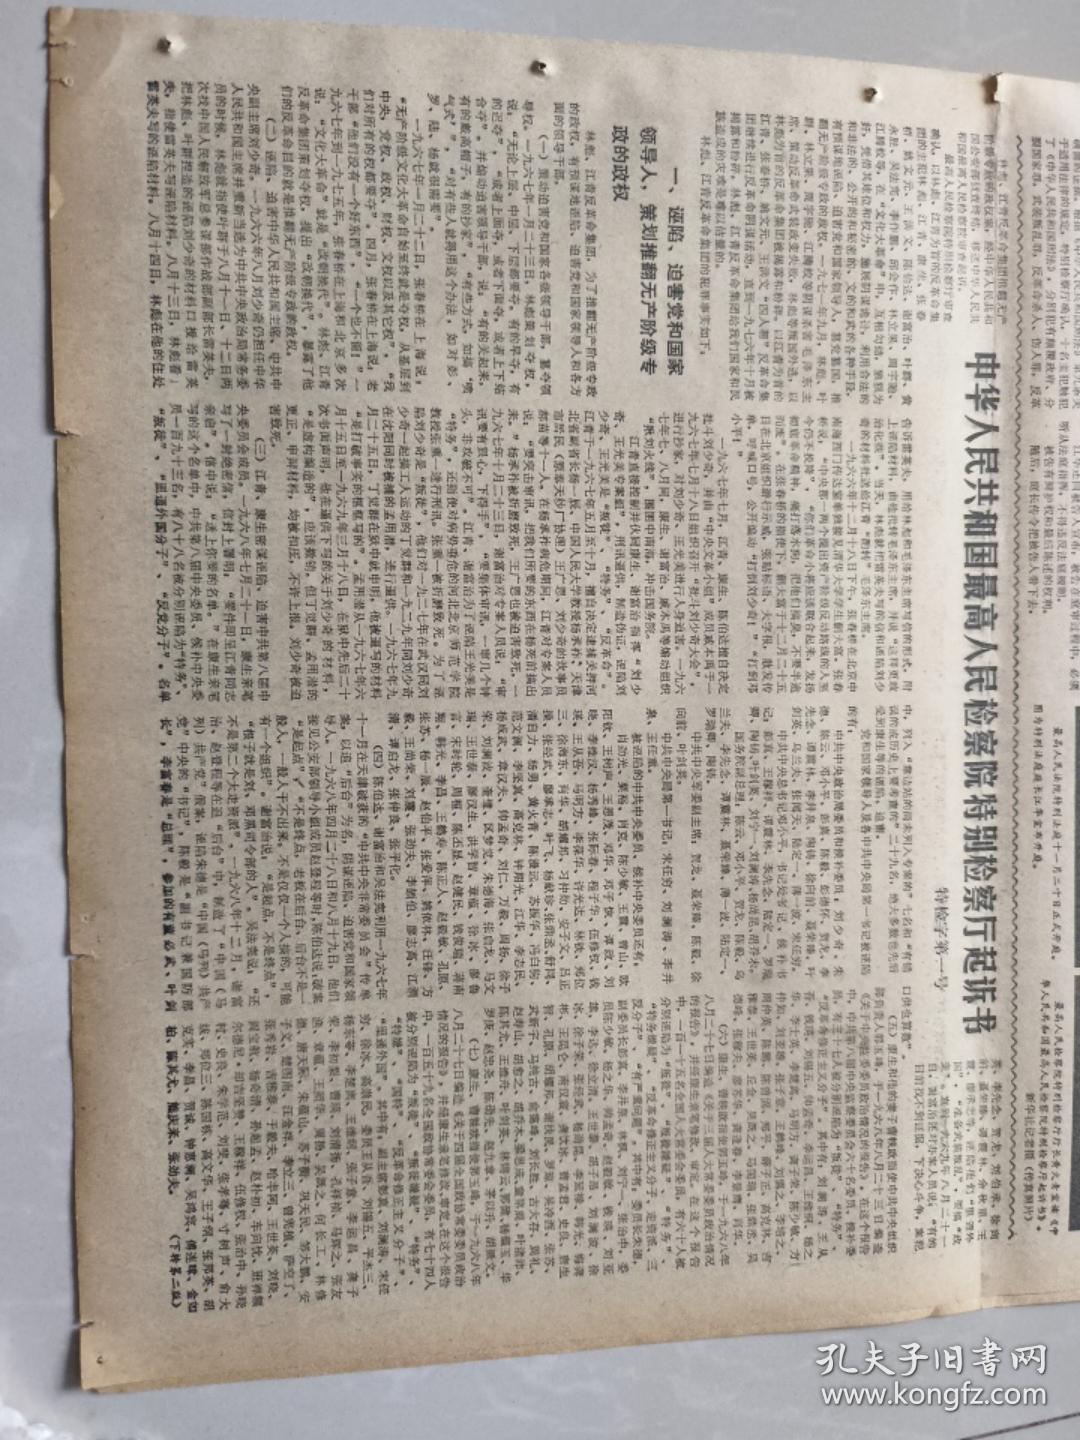 宁夏日报1980年10月21日